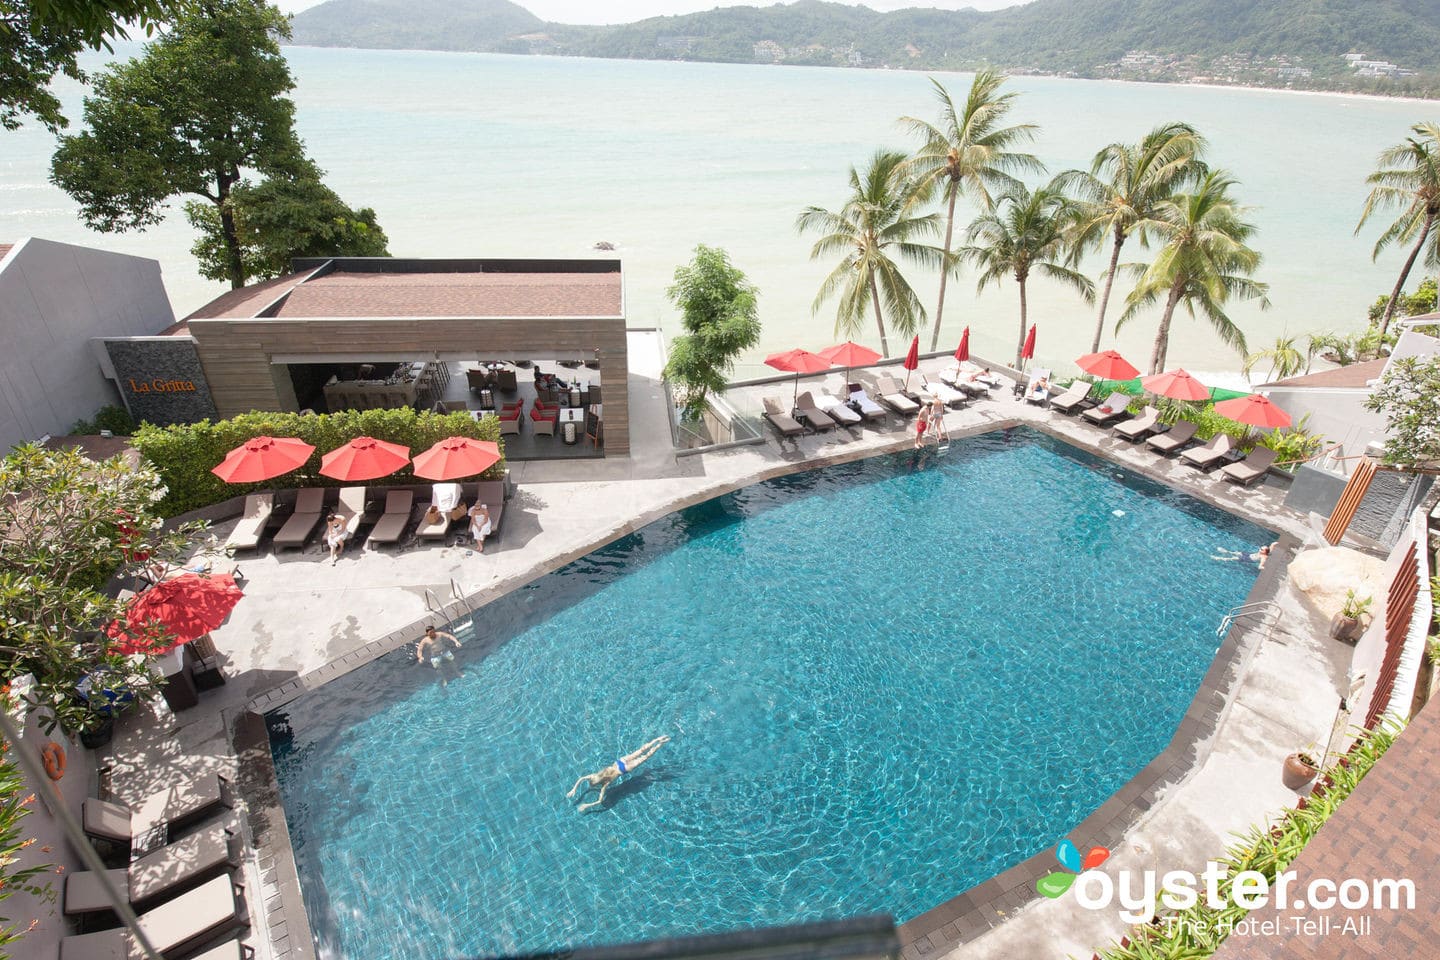 The Amari Beach Resort in Phuket